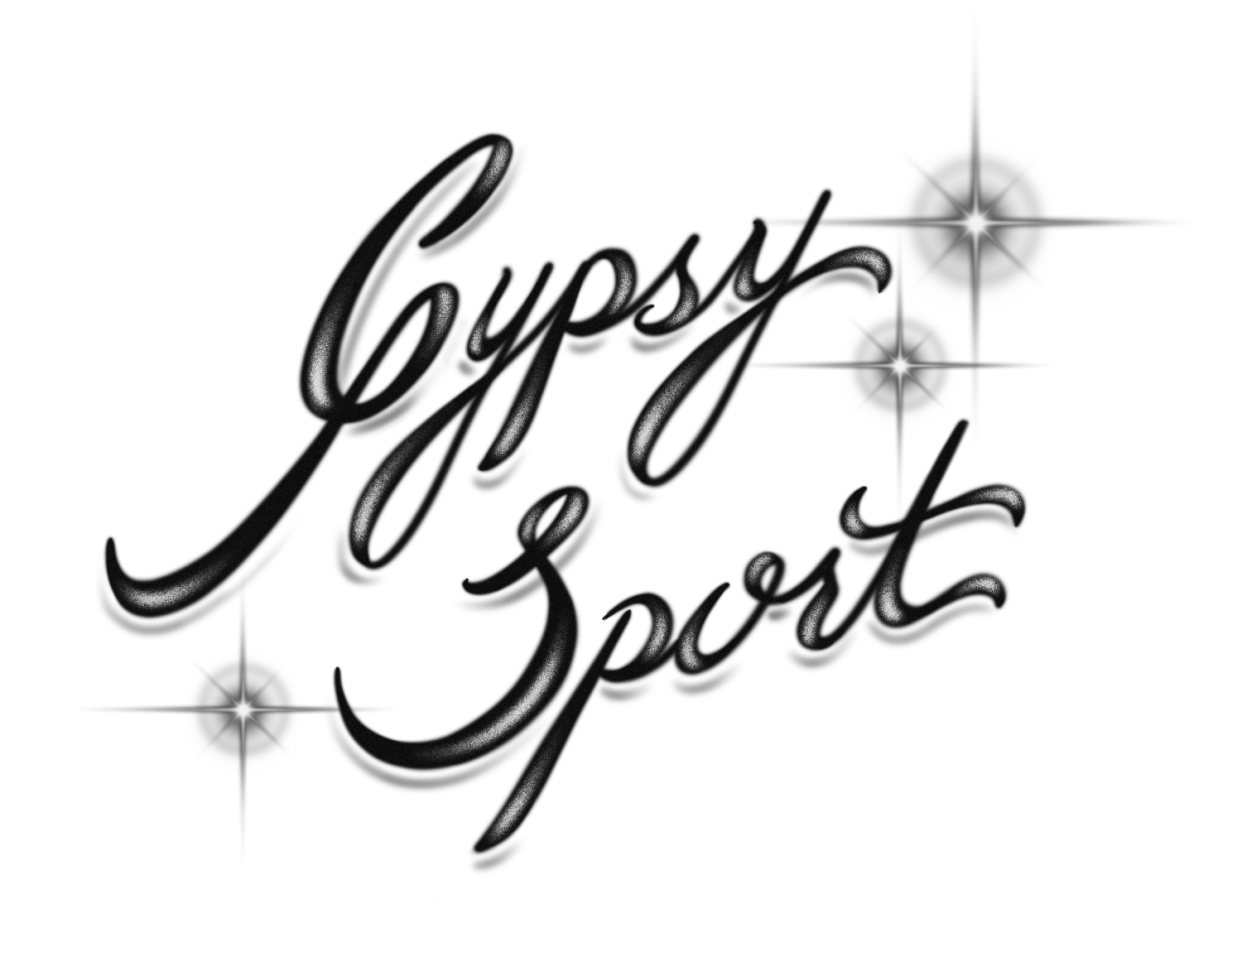 script that reads "Gypsy Sport"